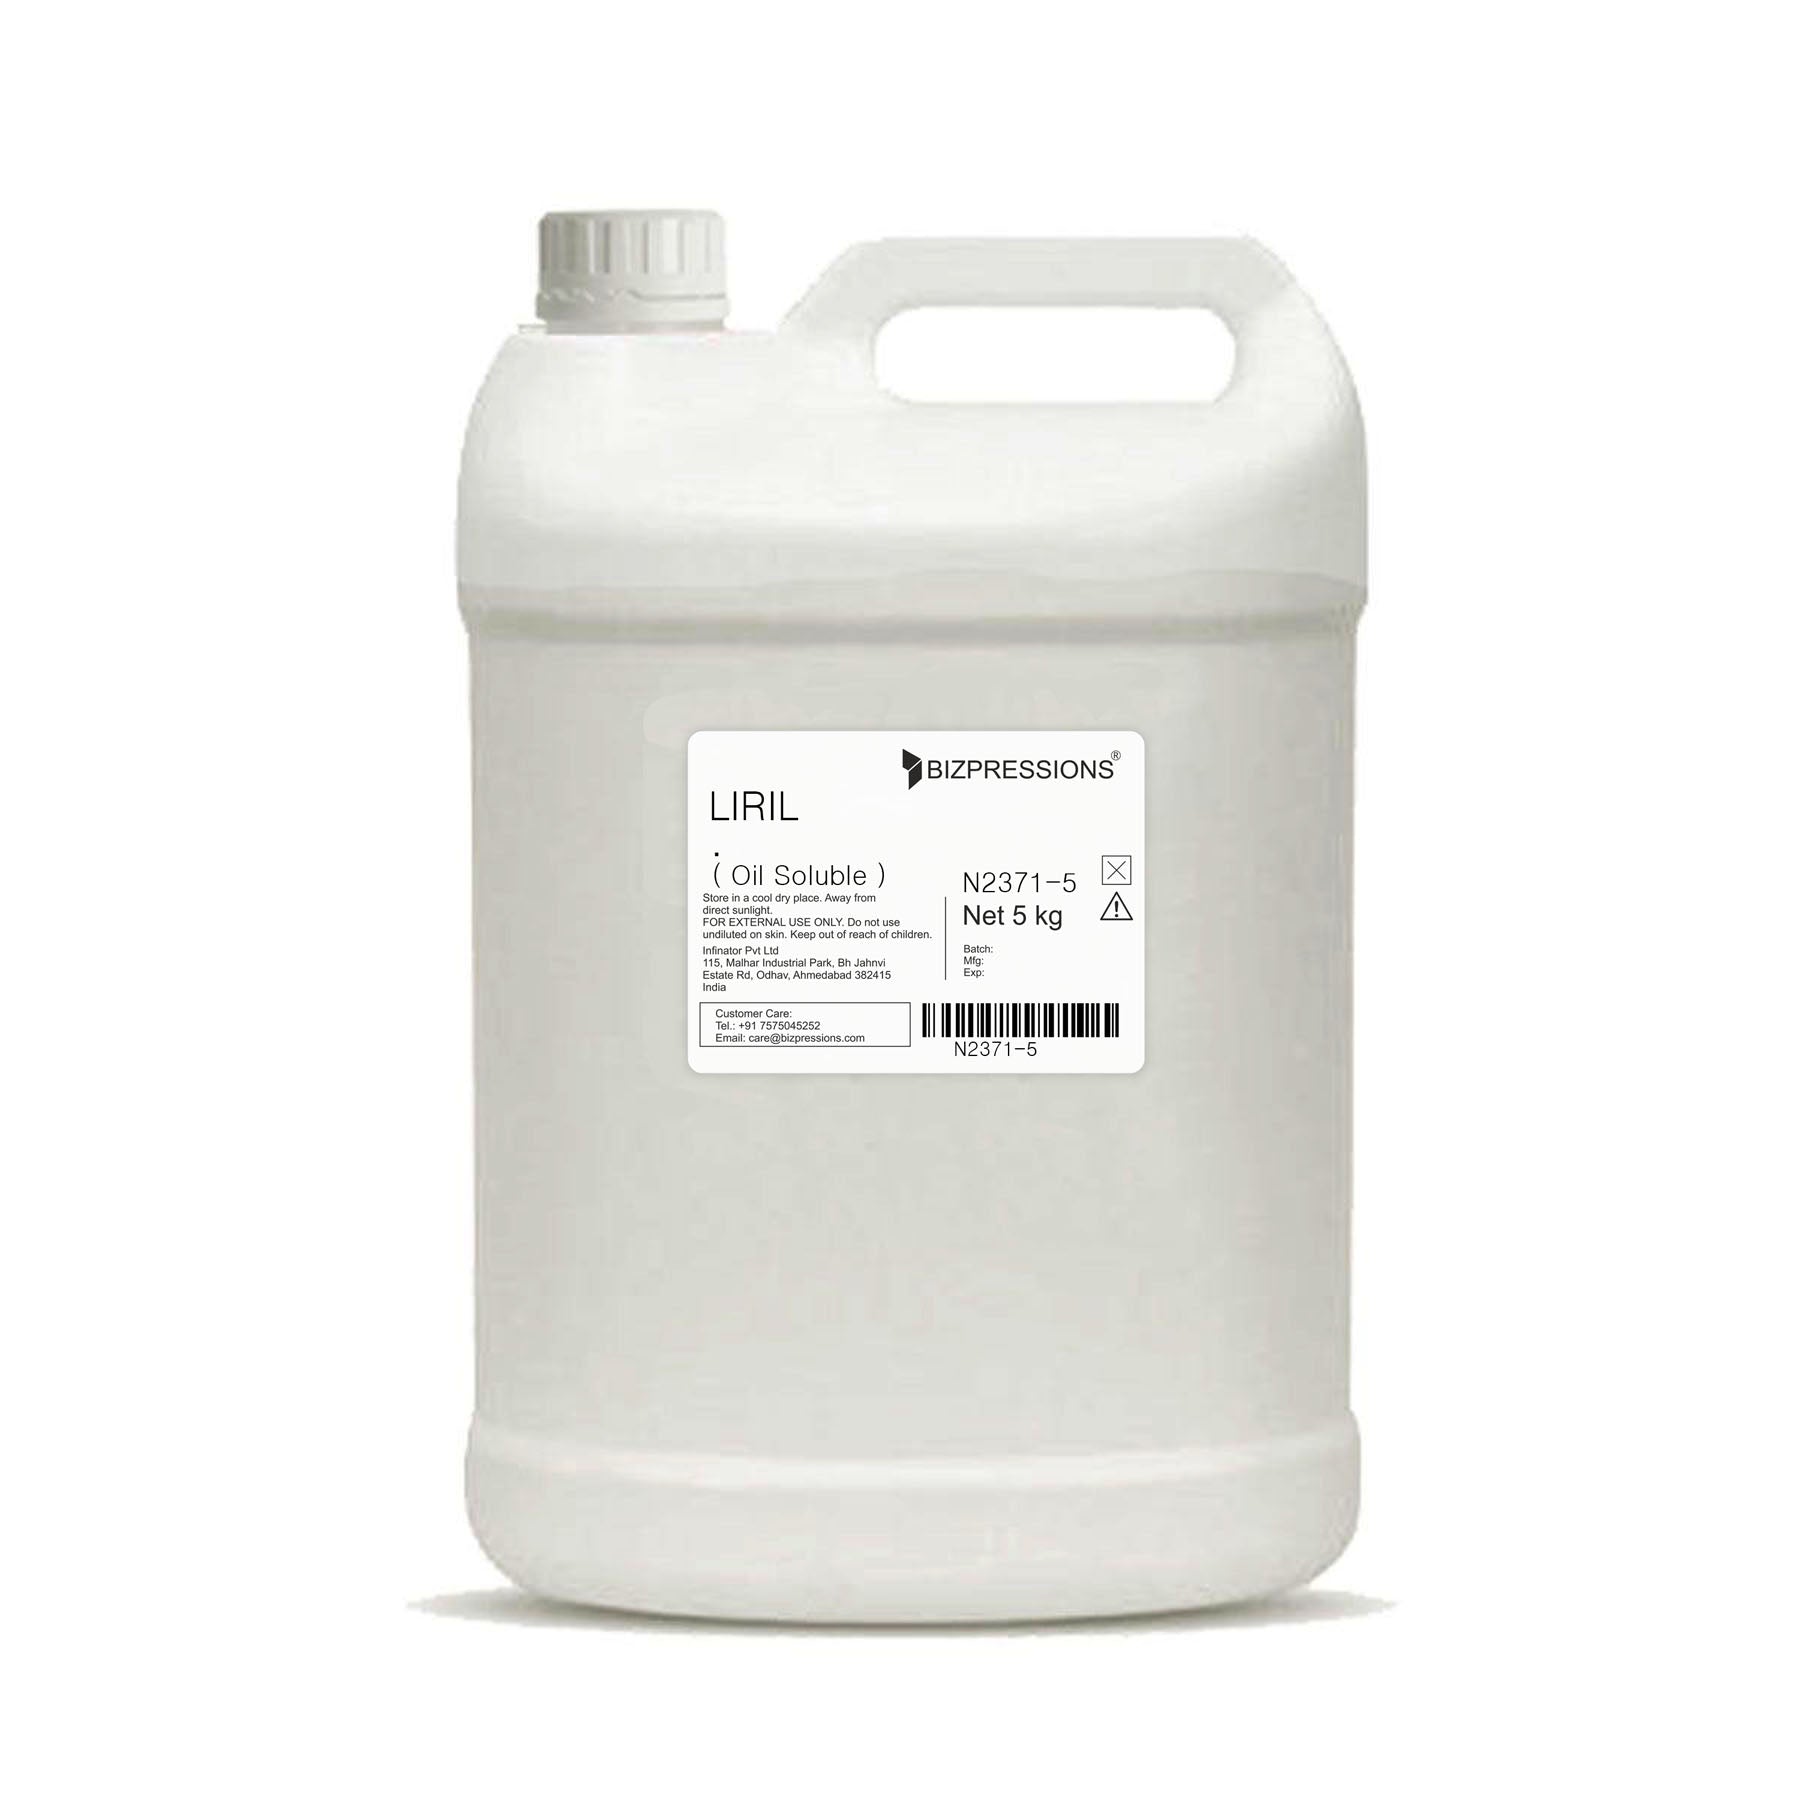 LIRIL - Fragrance ( Oil Soluble ) - 5 kg